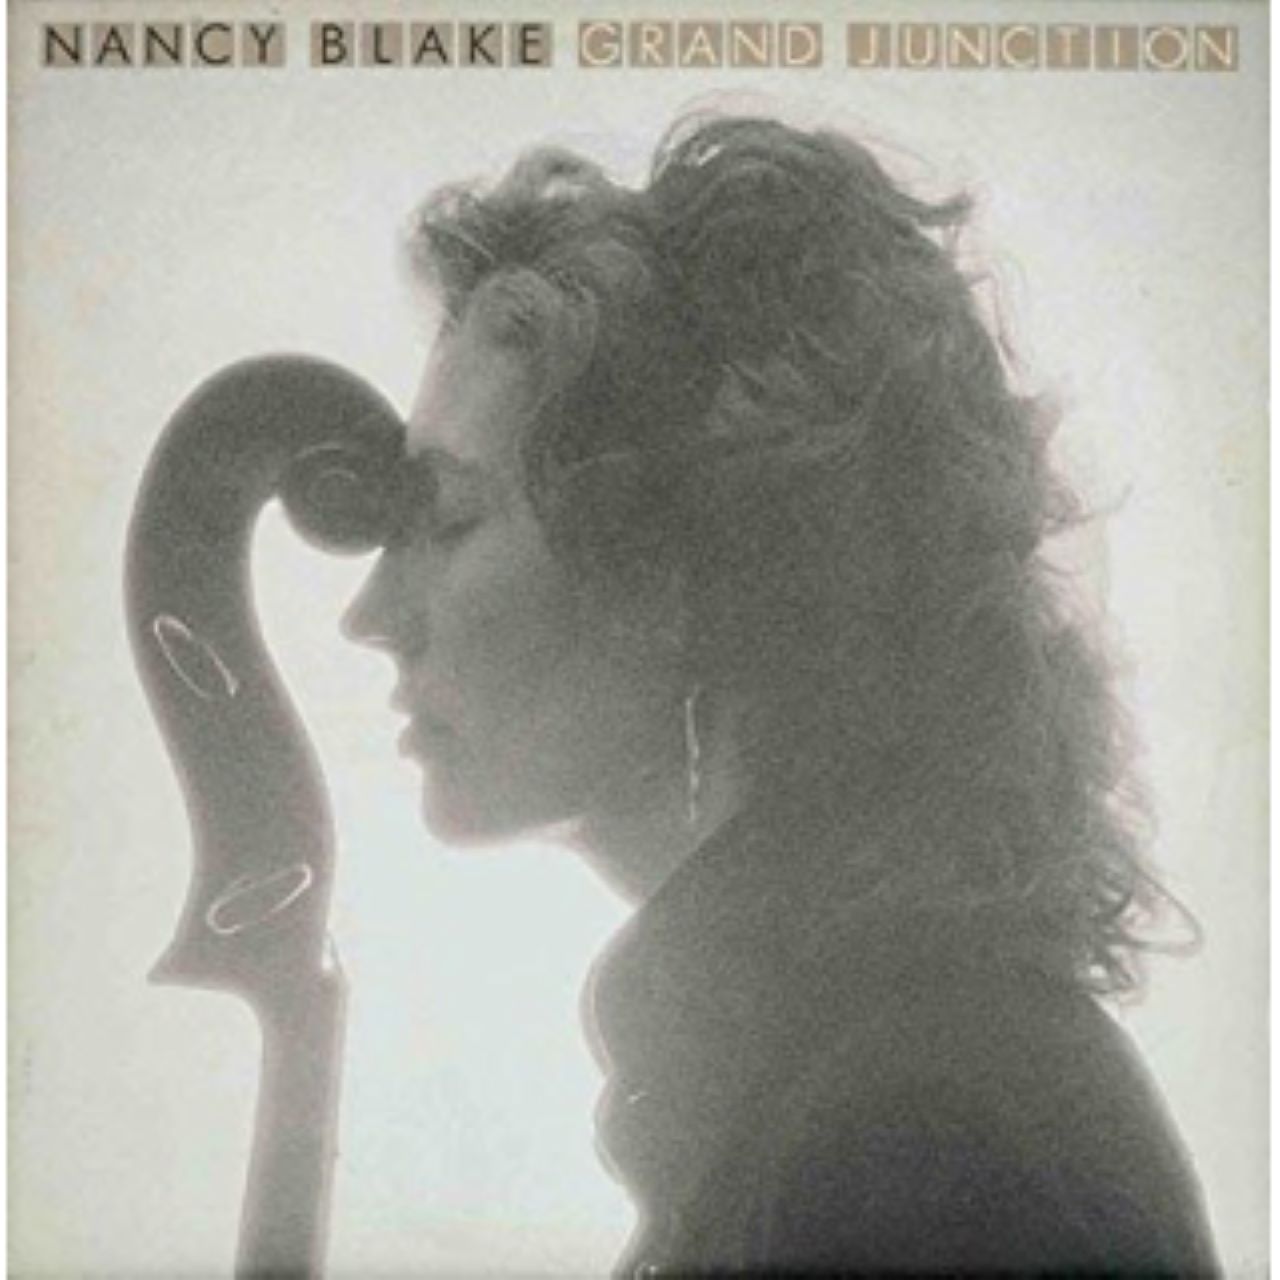 Nancy Blake - Grand Junction cover album